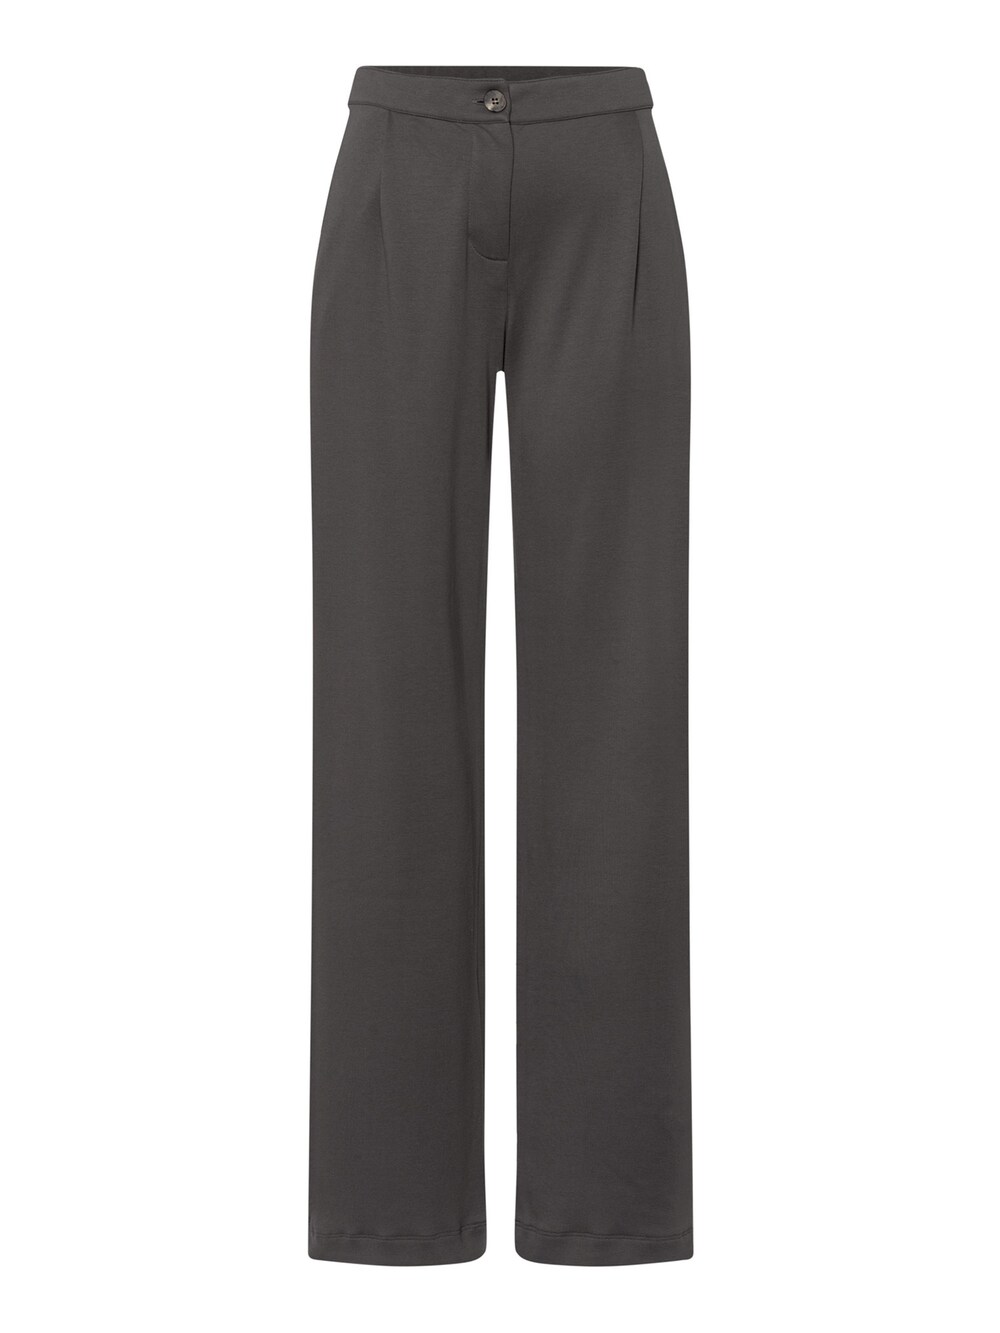 Обычные брюки Hanro Pure Comfort, темно-серый